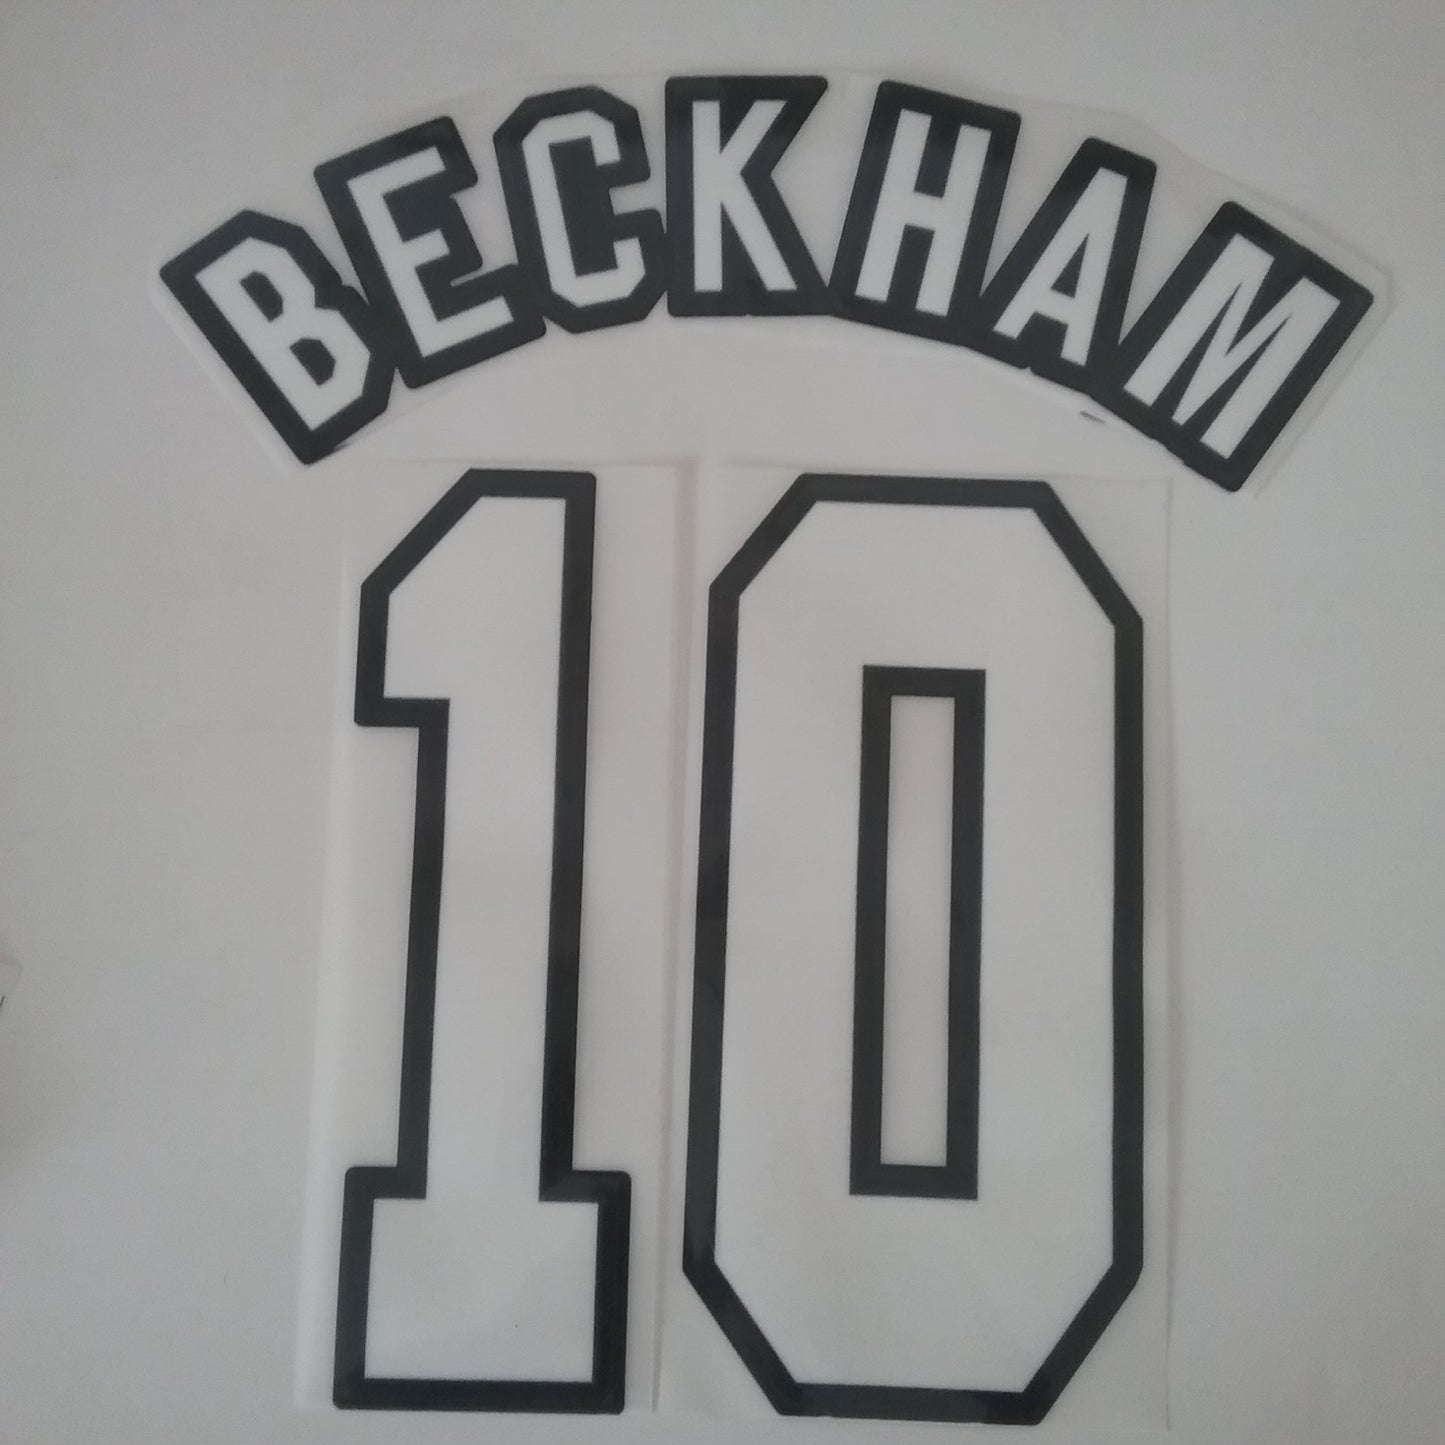 1992-96 Beckham #10 Manchester United Home Nameset